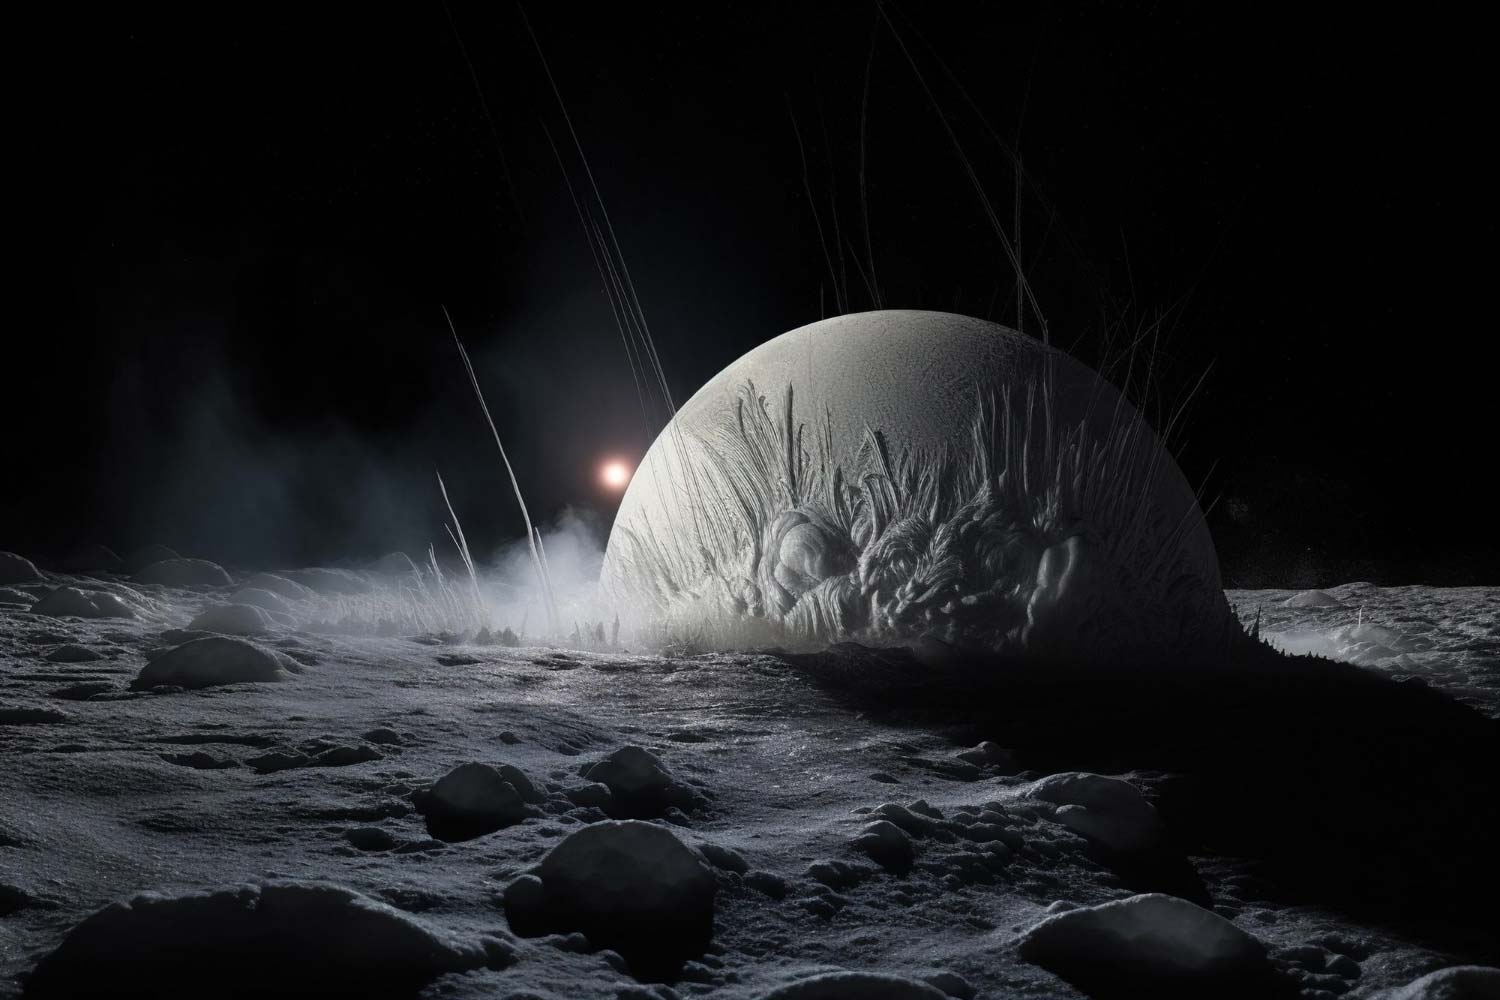 The frozen geysers of Enceladus Saturn's moon